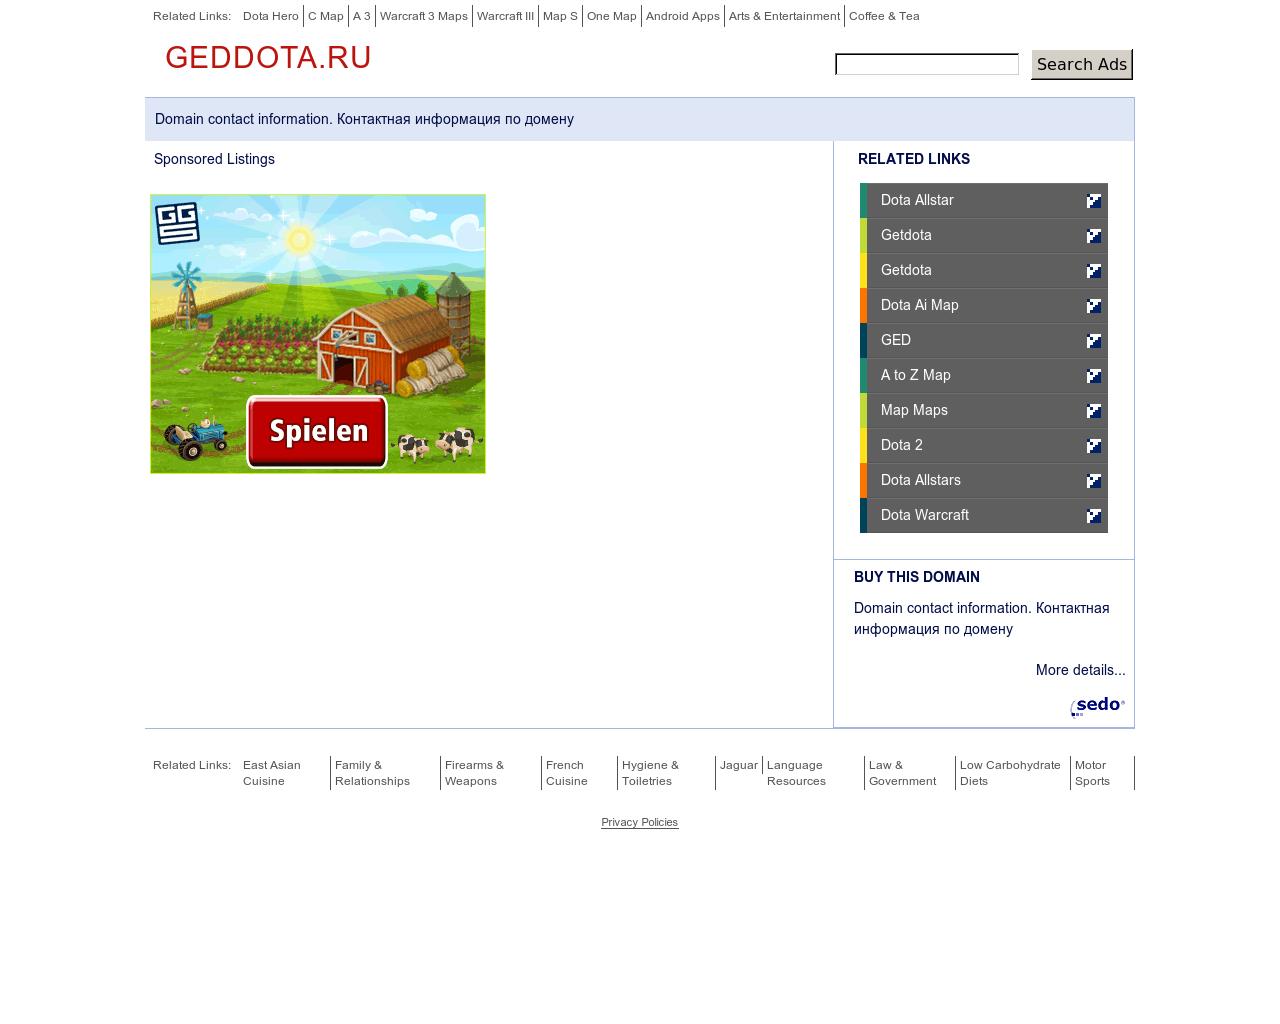 Изображение сайта geddota.ru в разрешении 1280x1024